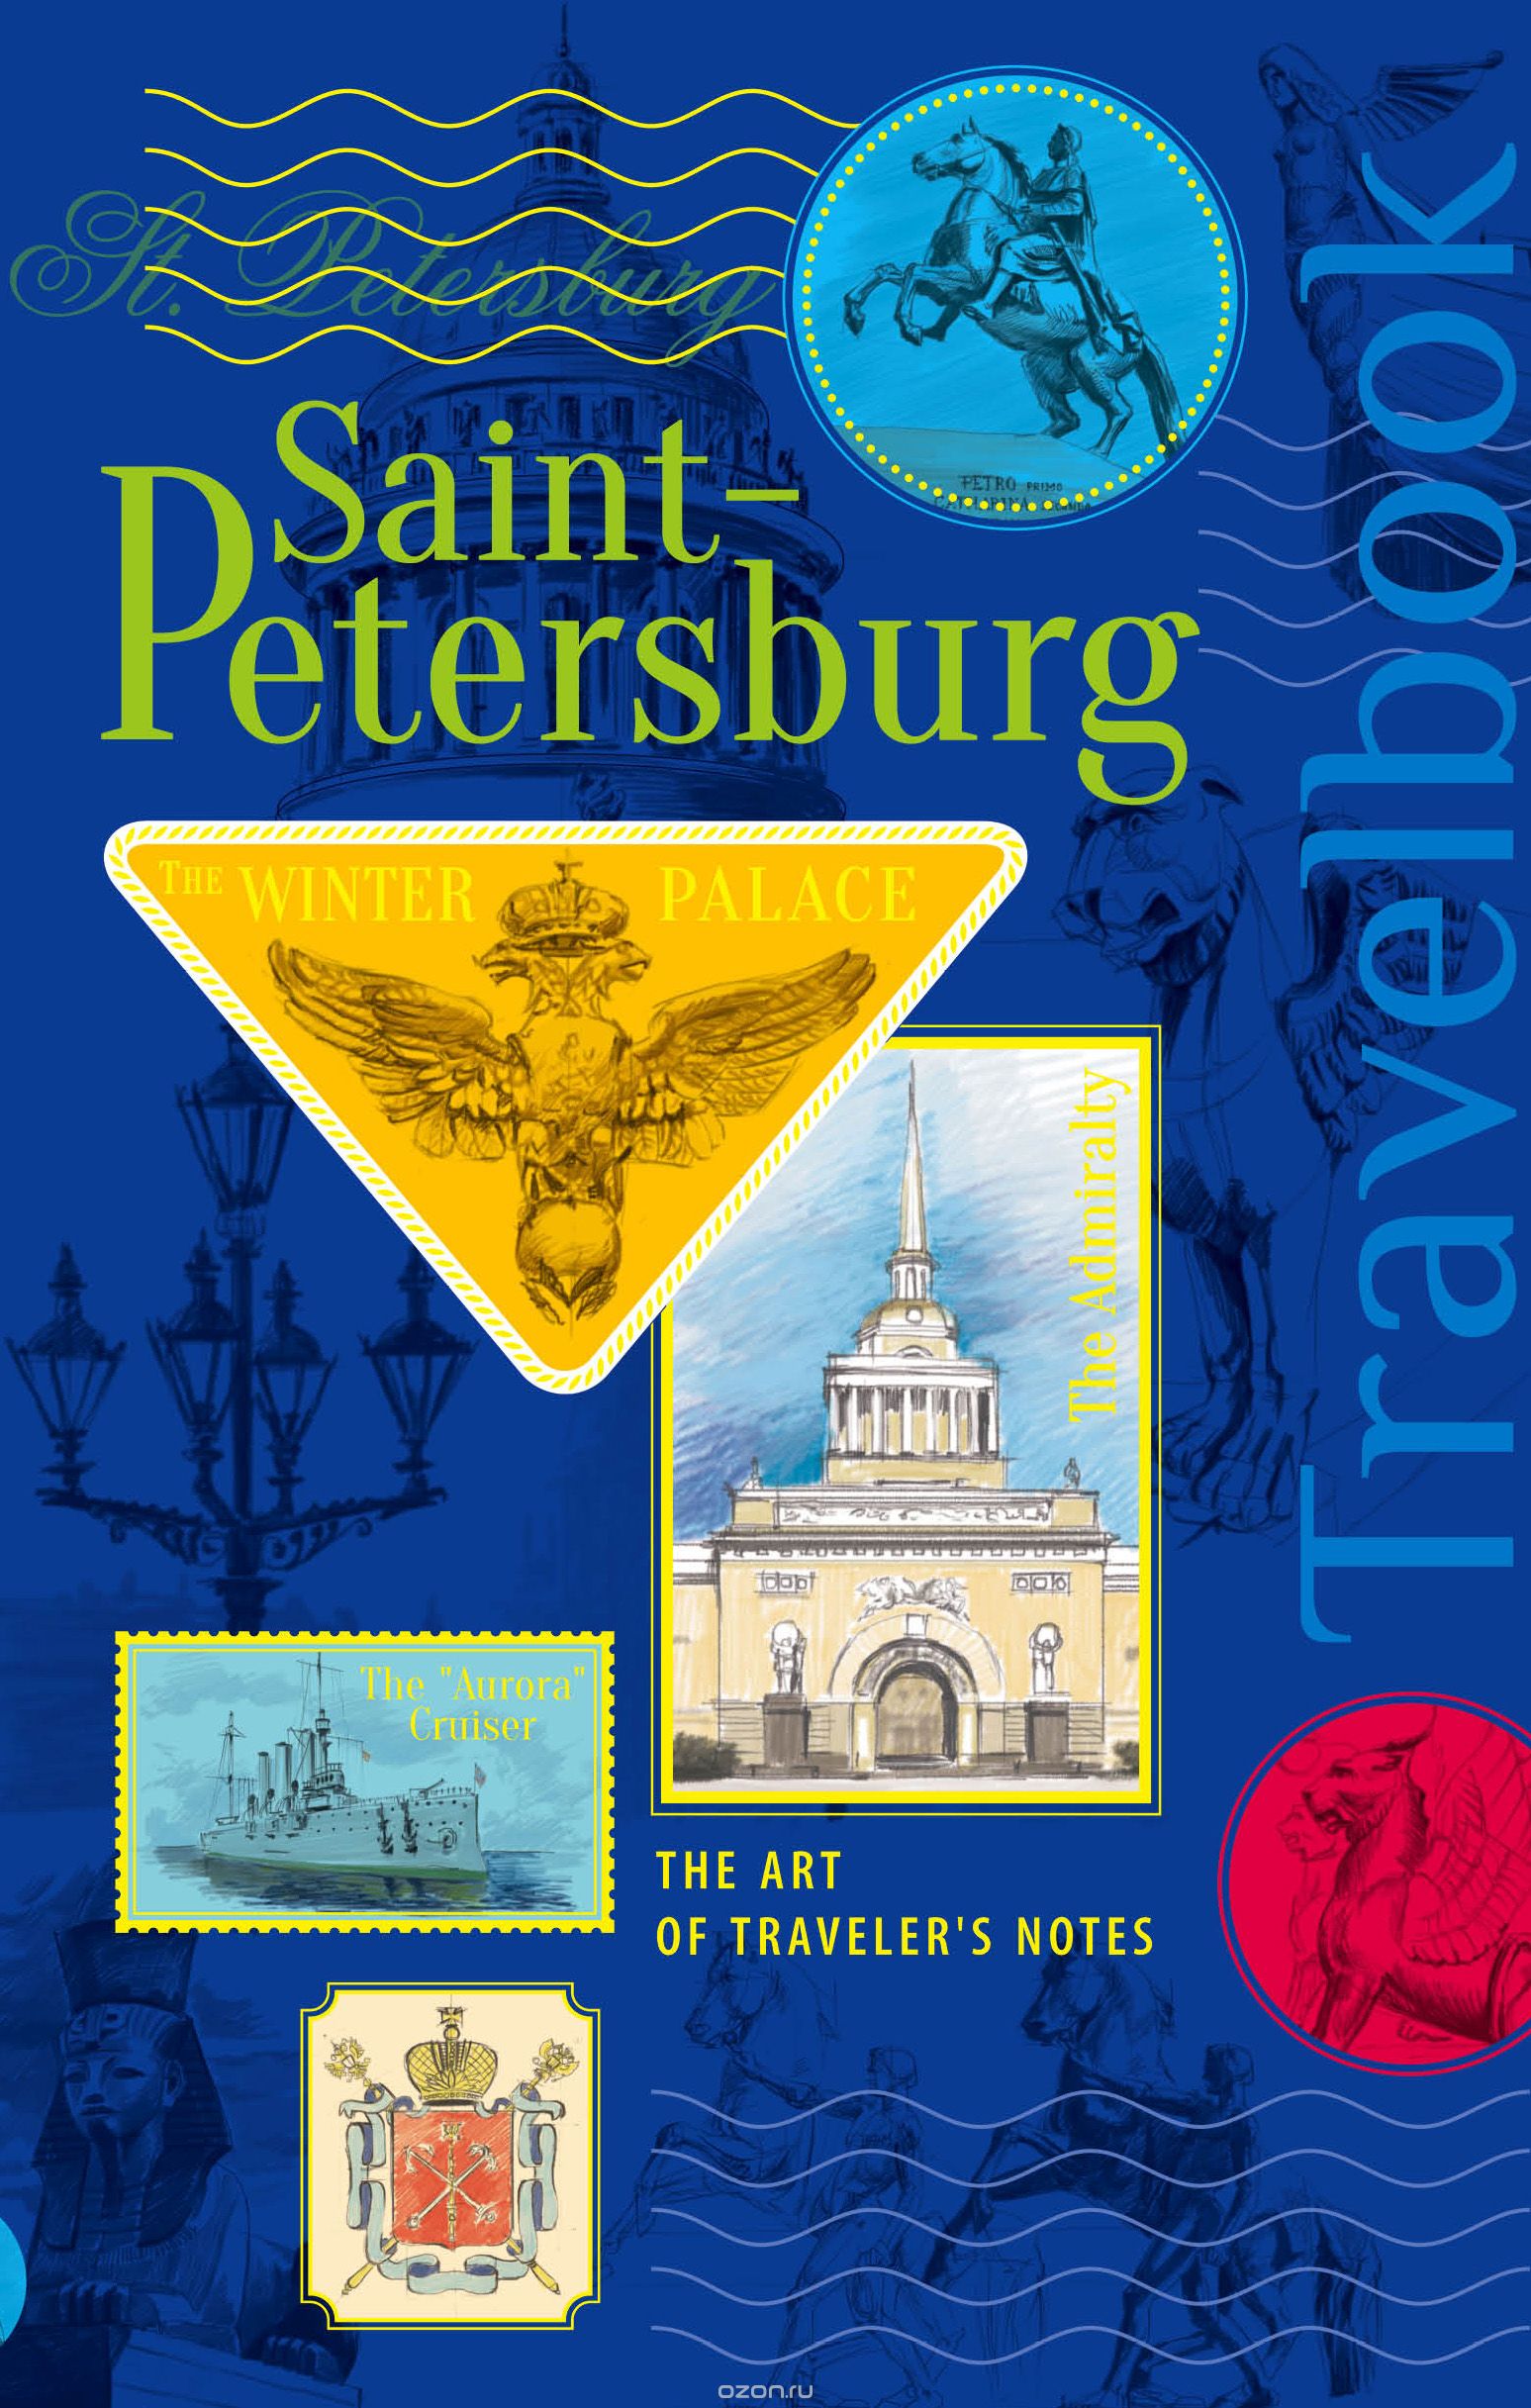 Скачать книгу "St. Petersburg. The Art of traveler's Notes / Санкт-Петербург. Книга эскизов. Искусство визуальных заметок"